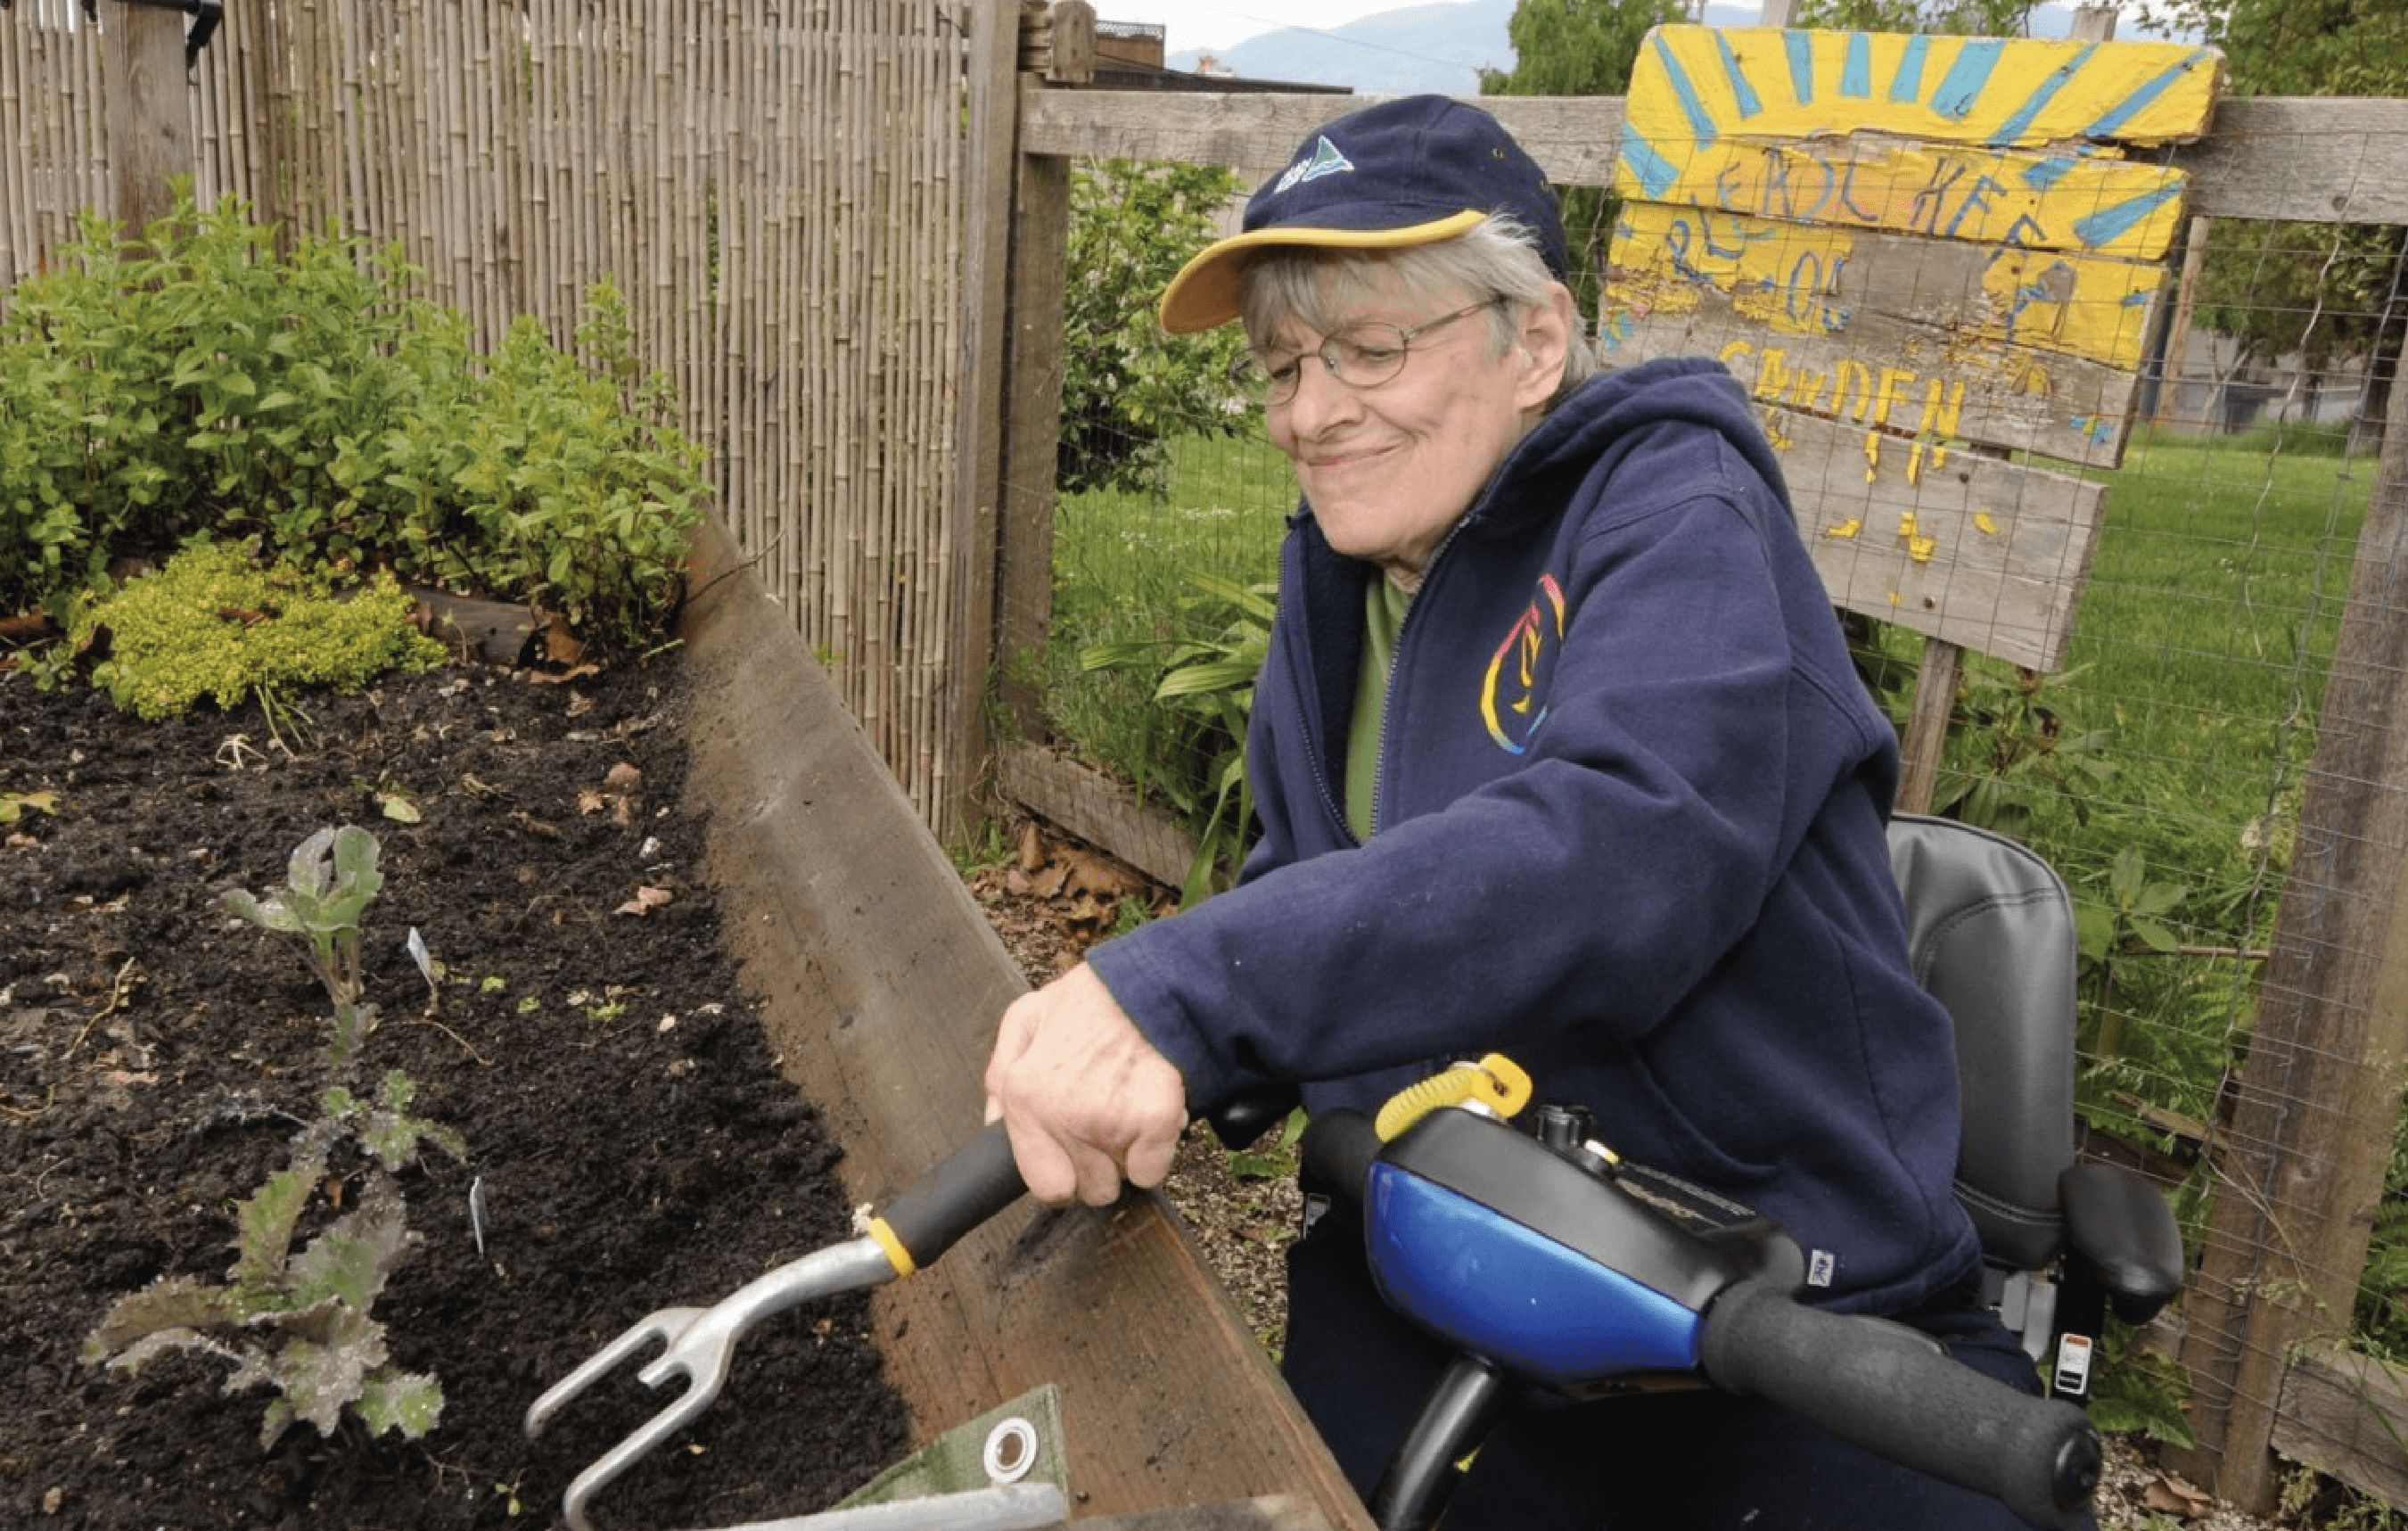 DIGA member working in accessible garden.